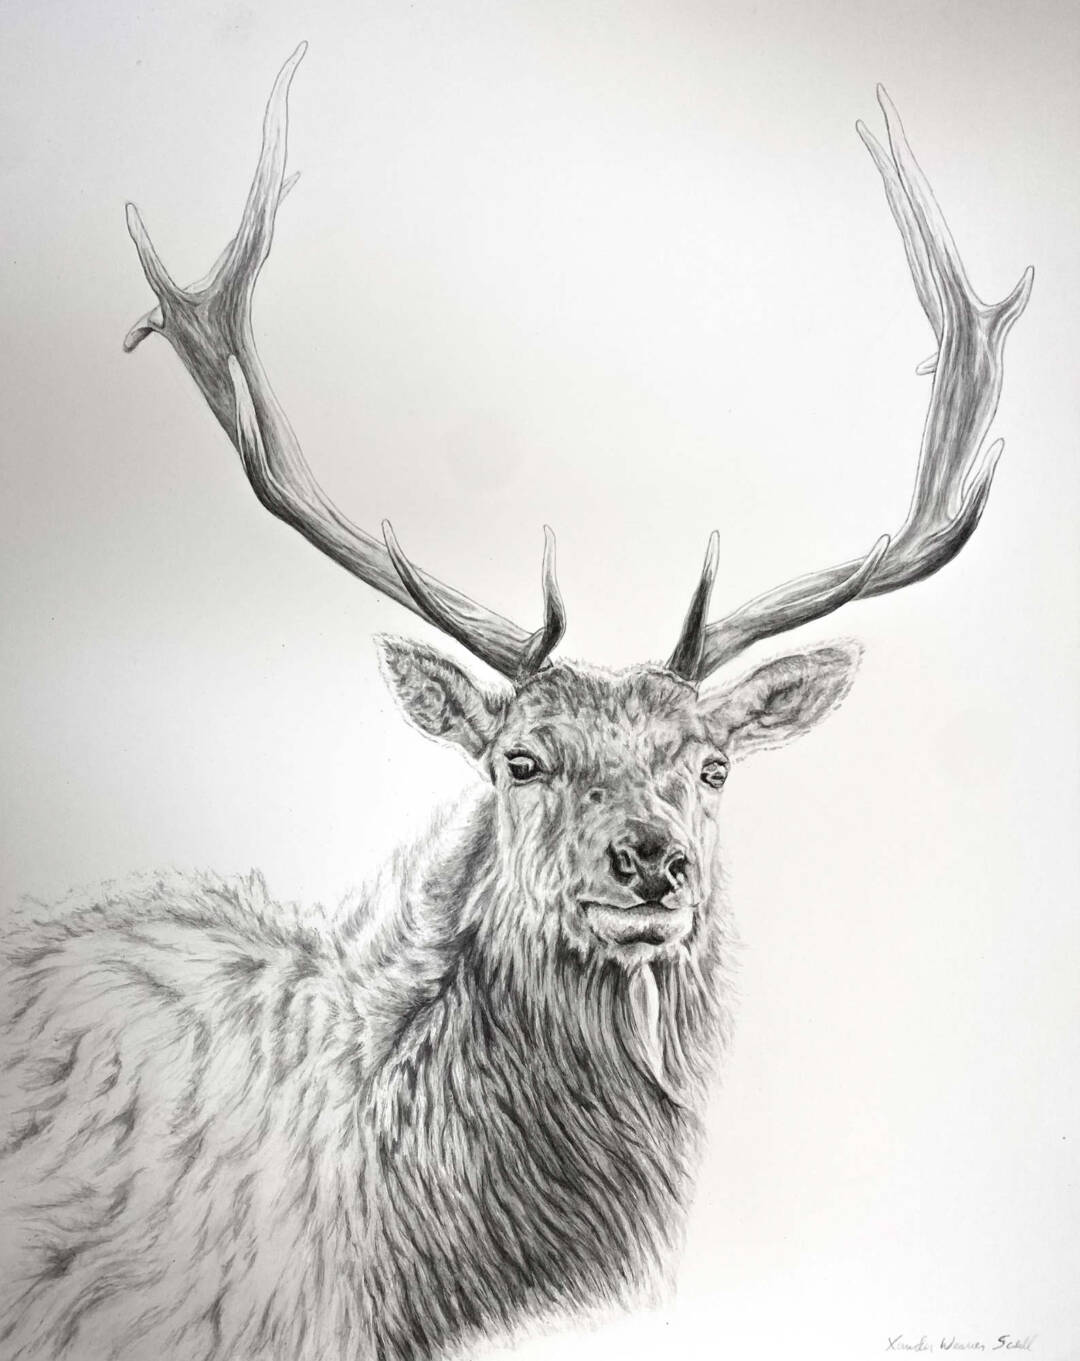 Xander Weaver-Scull - Tule Elk 2 - Ink Painting - 22in x 28in